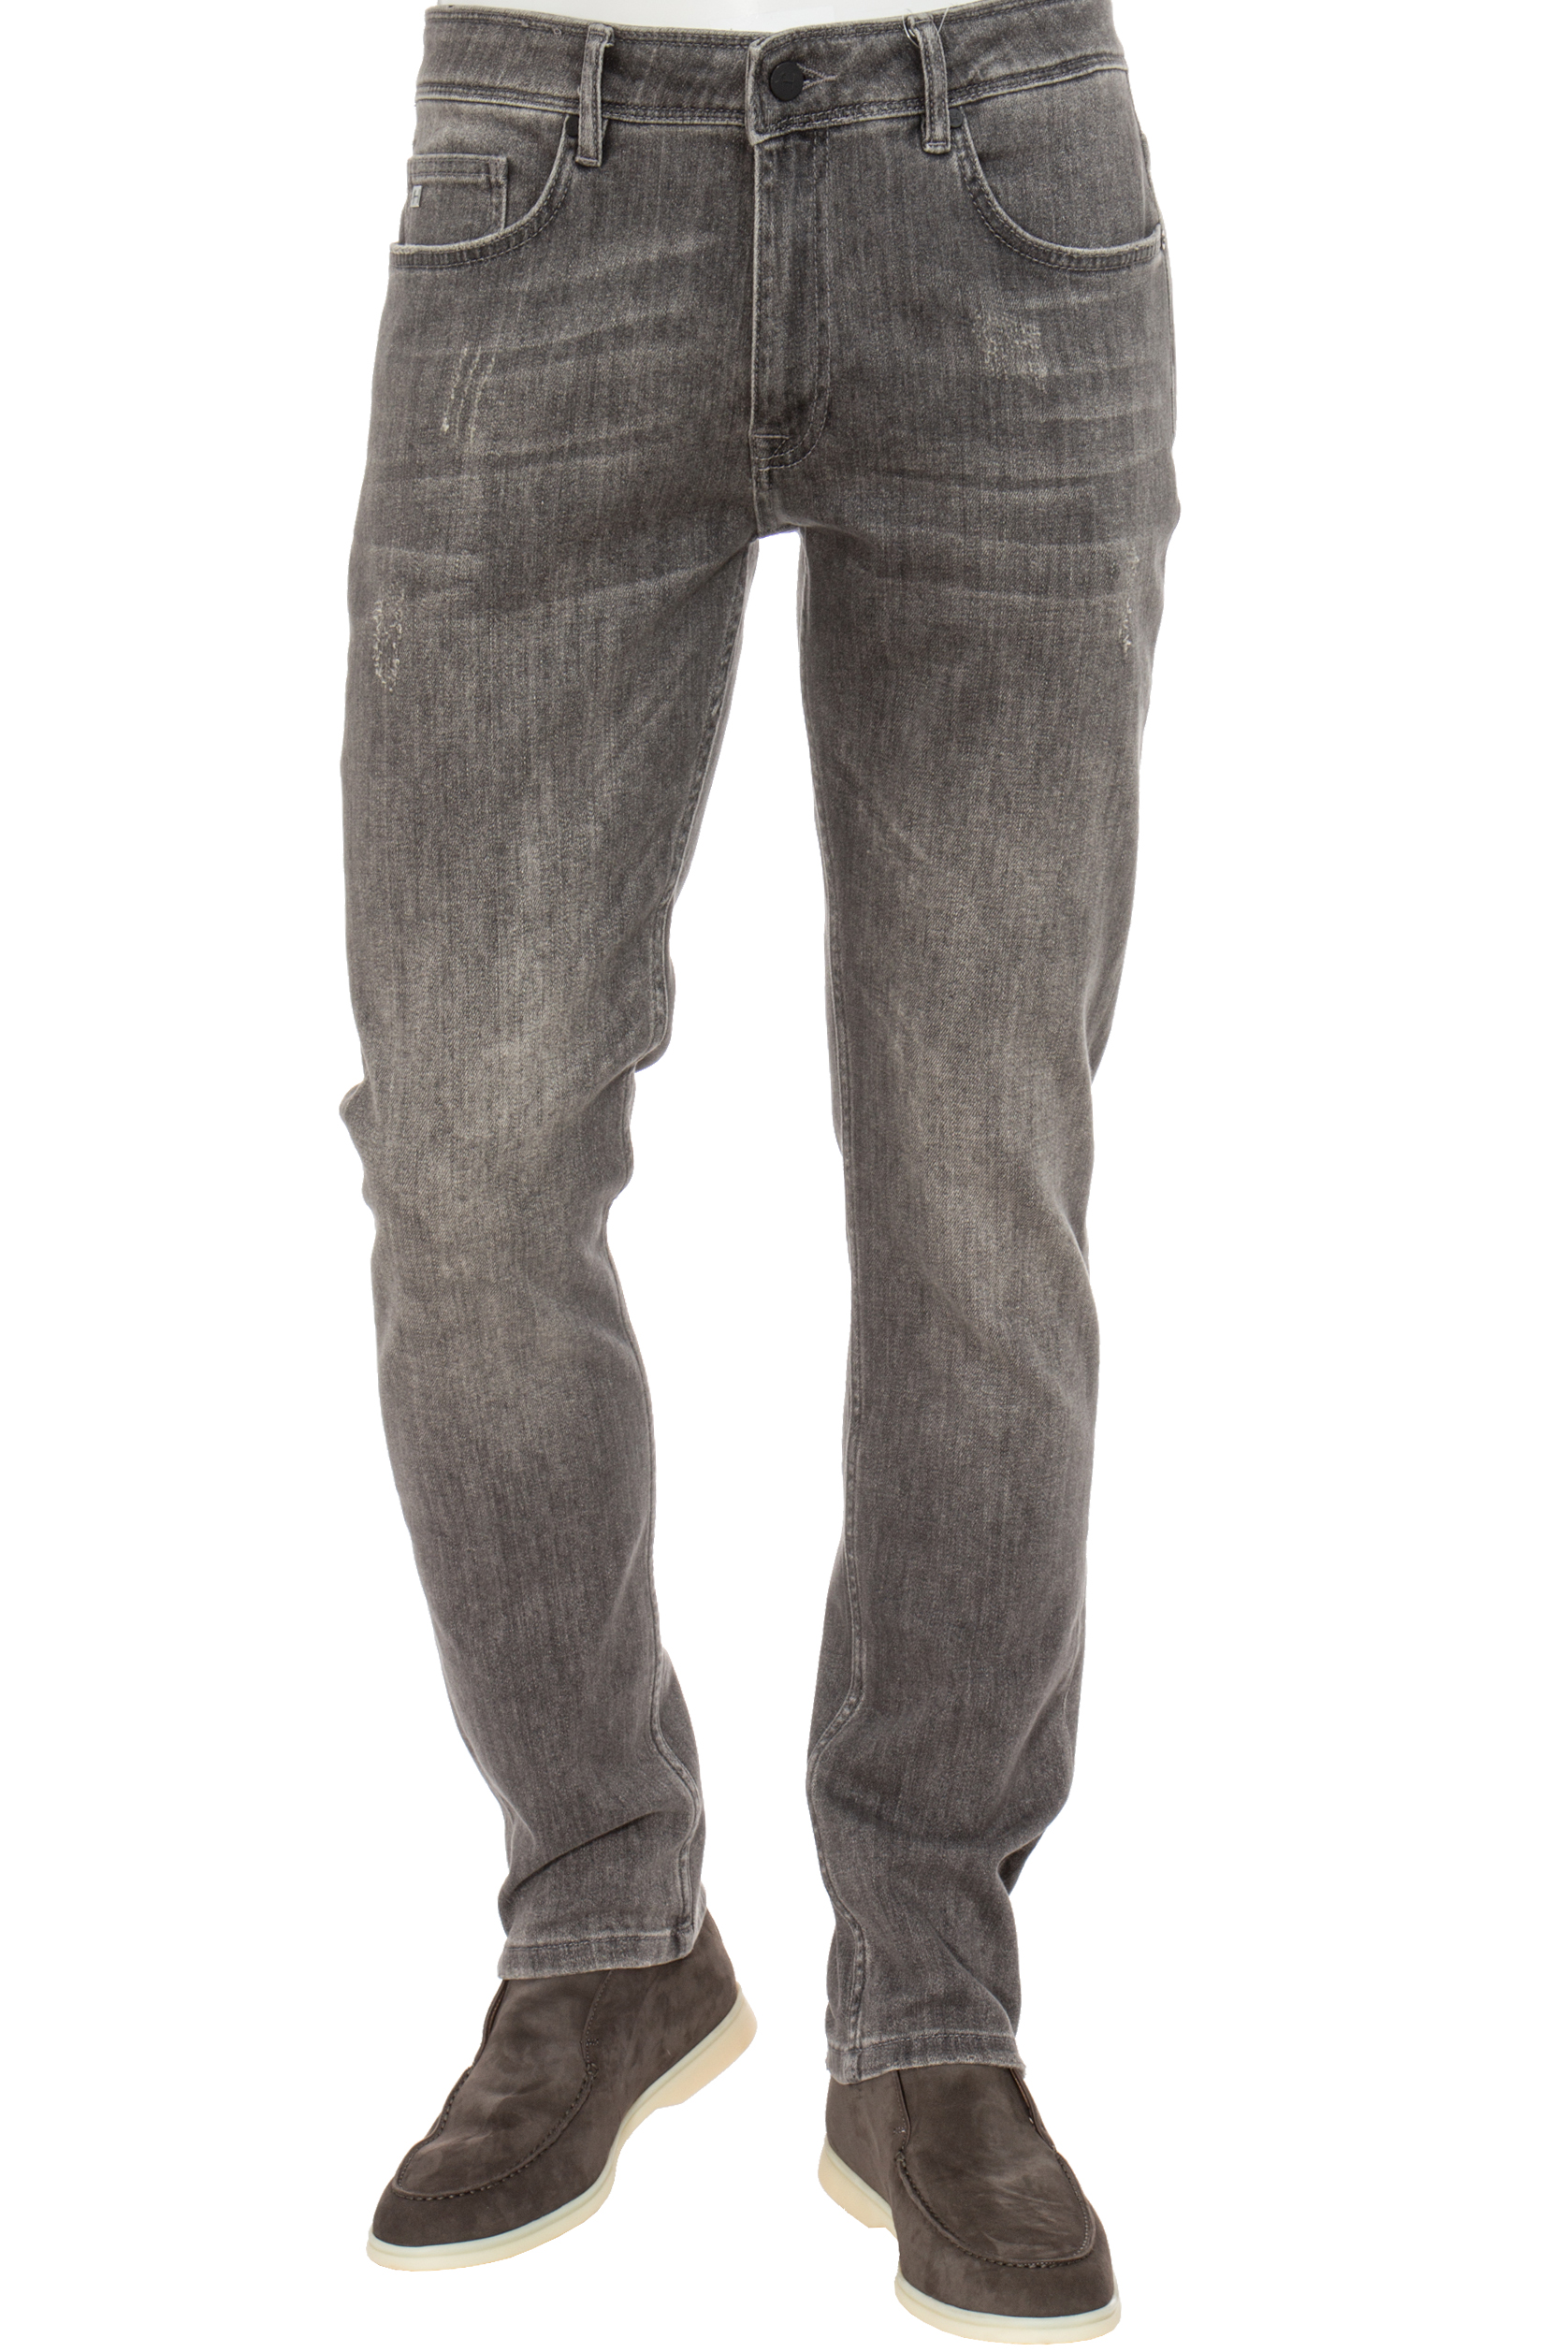 HILTL Jeans Regular Fit | Jeans | Jeans & Pants | Clothing | Men ...